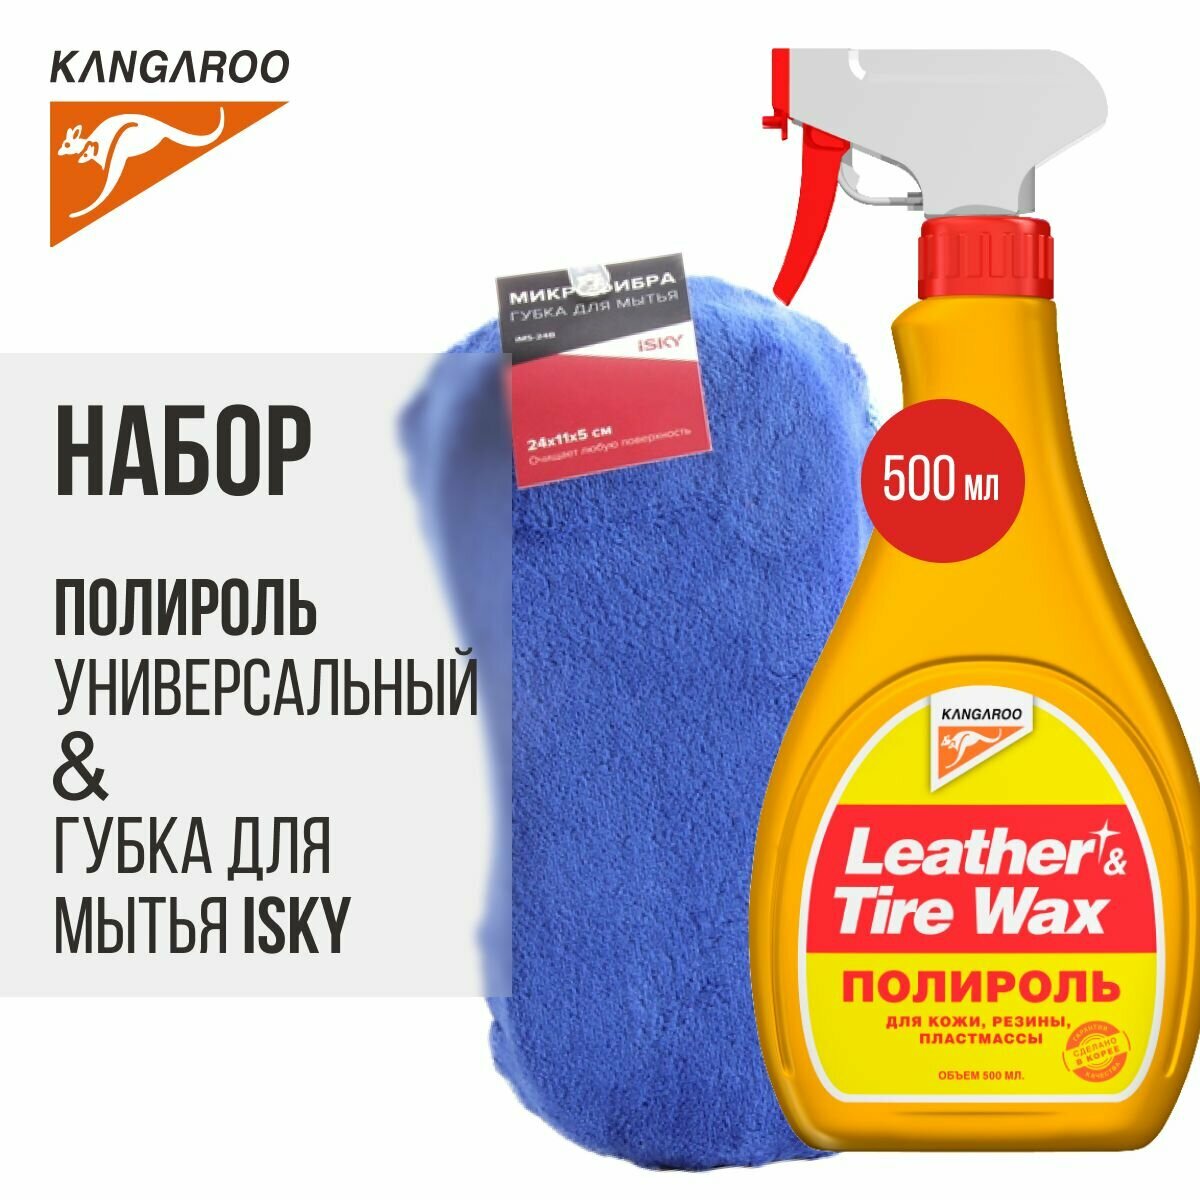 Набор Kangaroo "Leather & Tire Wax Lite"+ Губка для мытья из микрофибры iSky